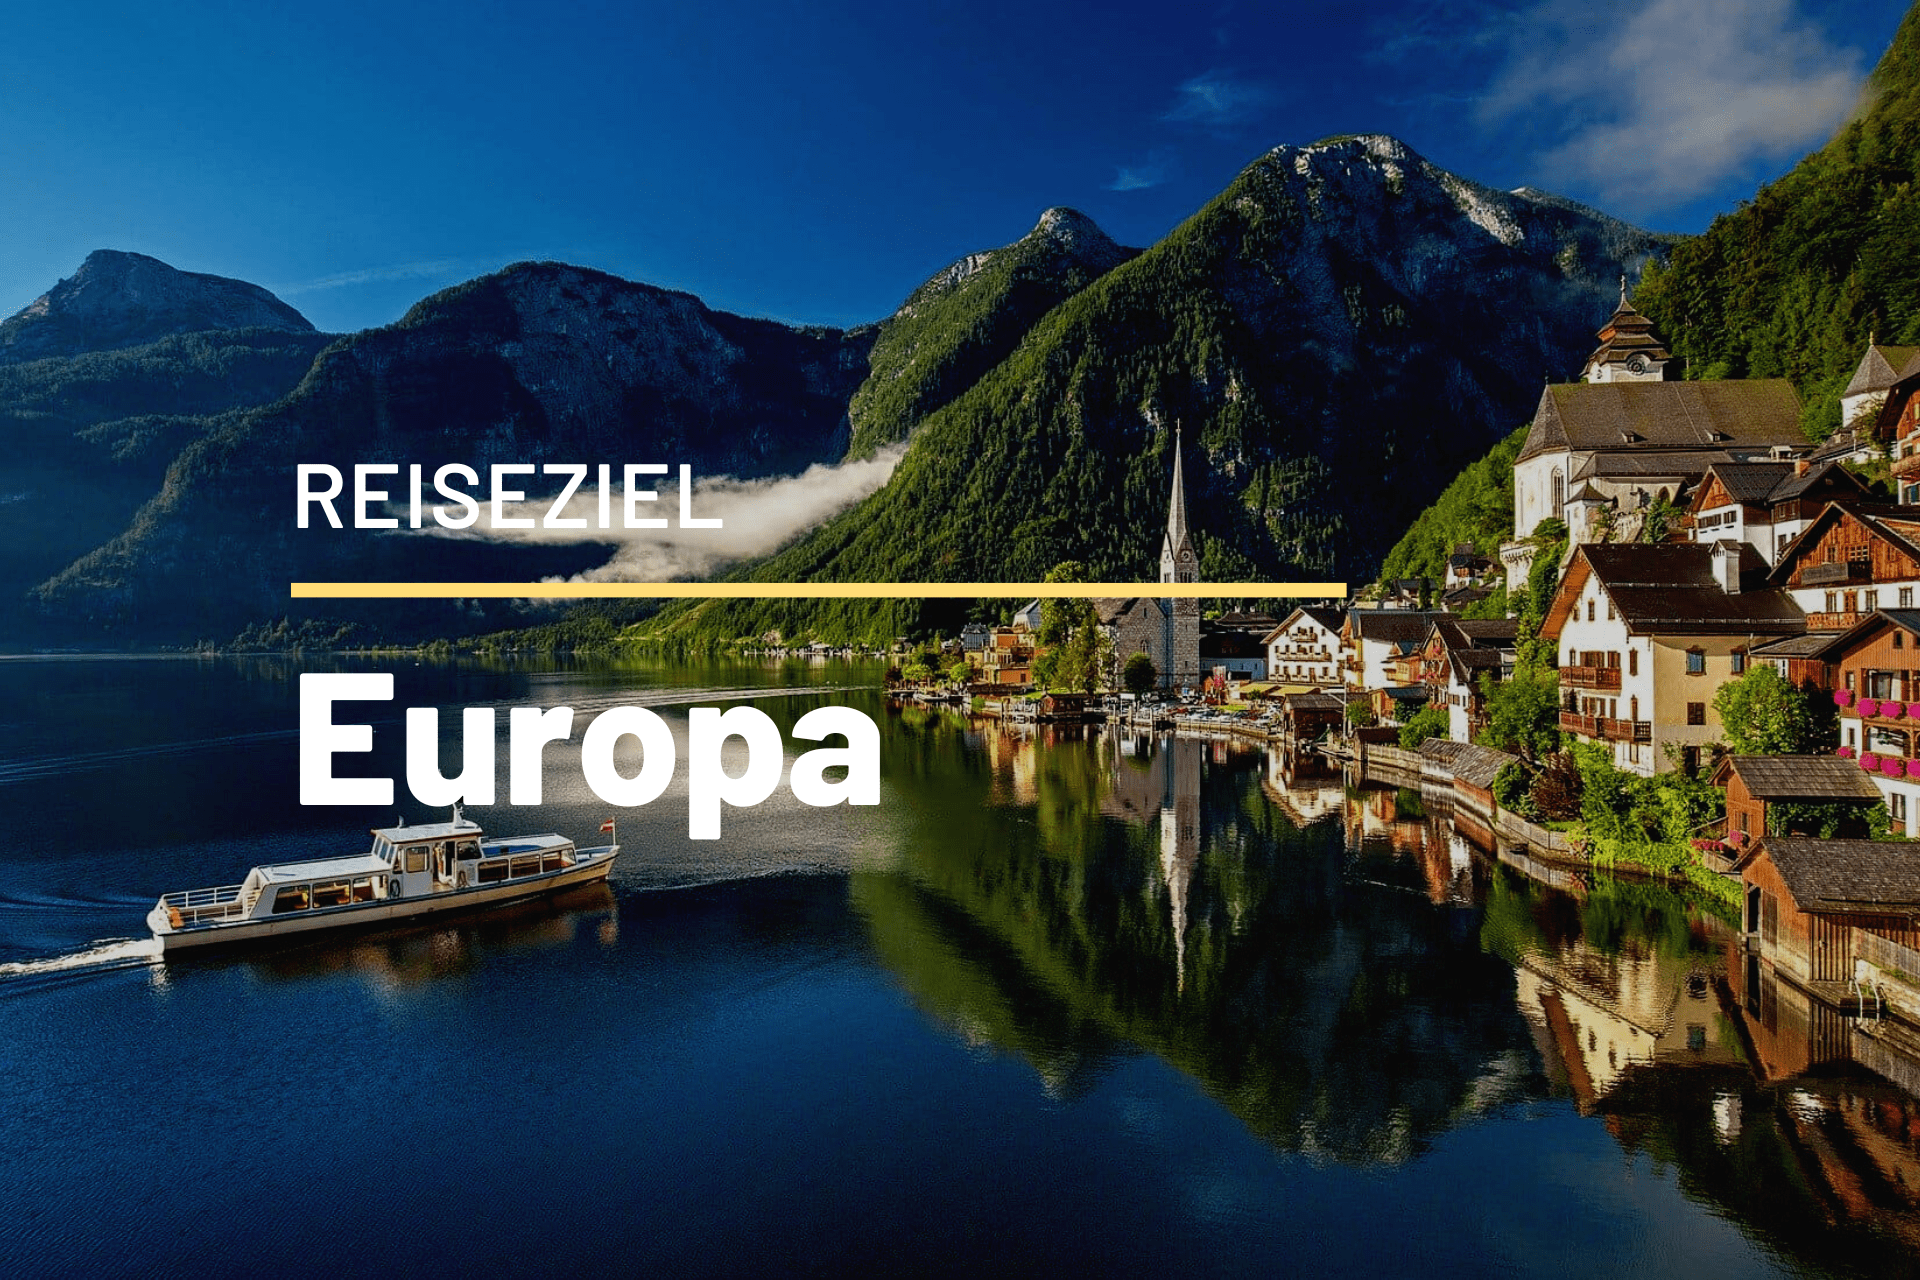 Reiseziel Europa